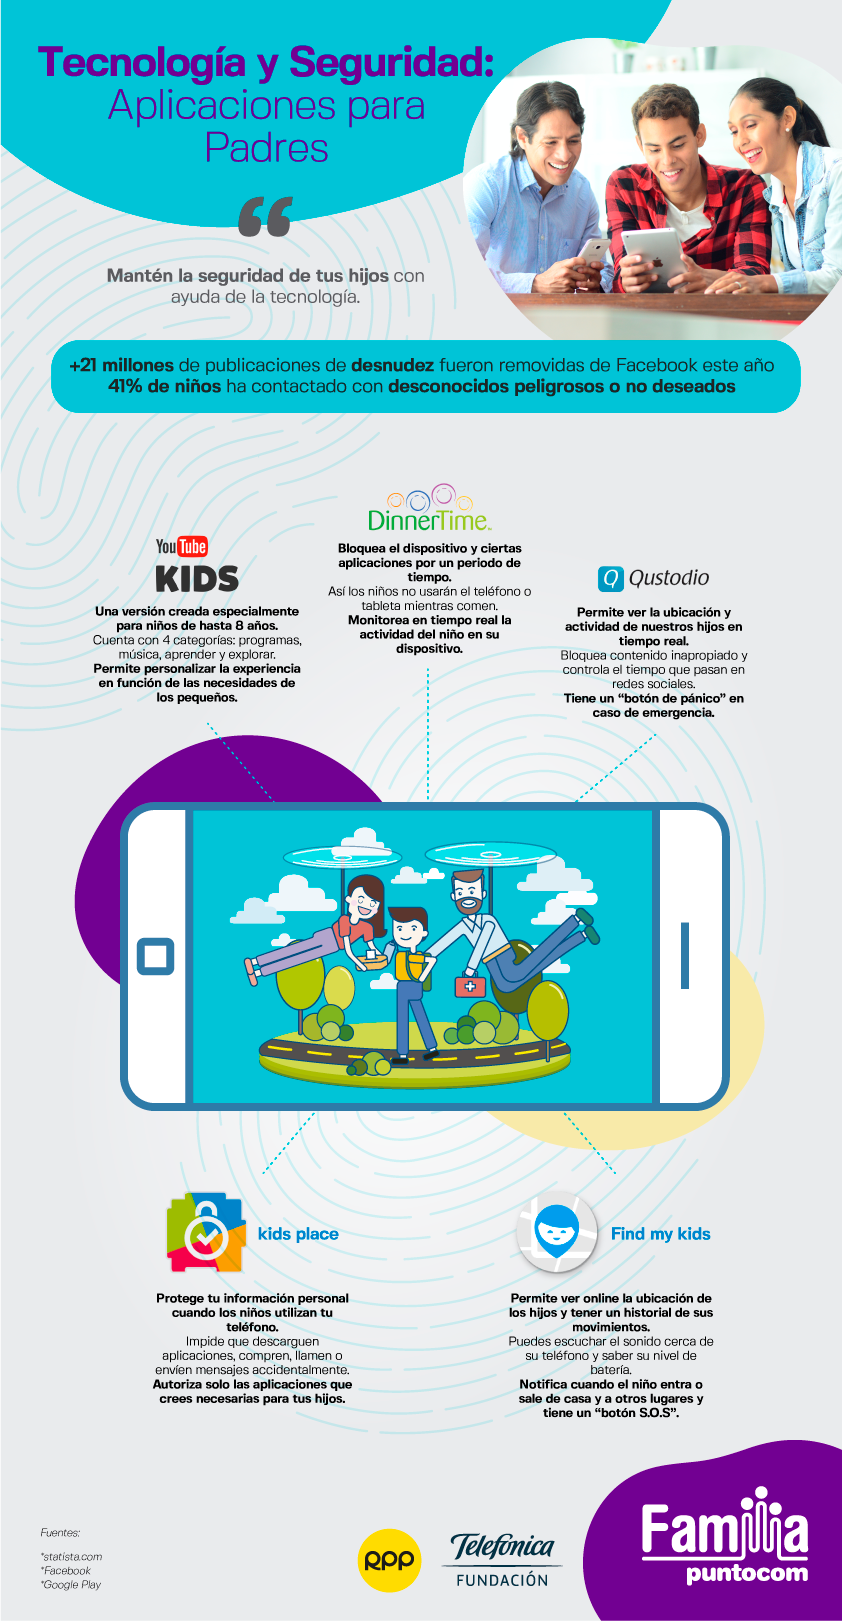 Tecnología y seguridad: Aplicaciones para padres